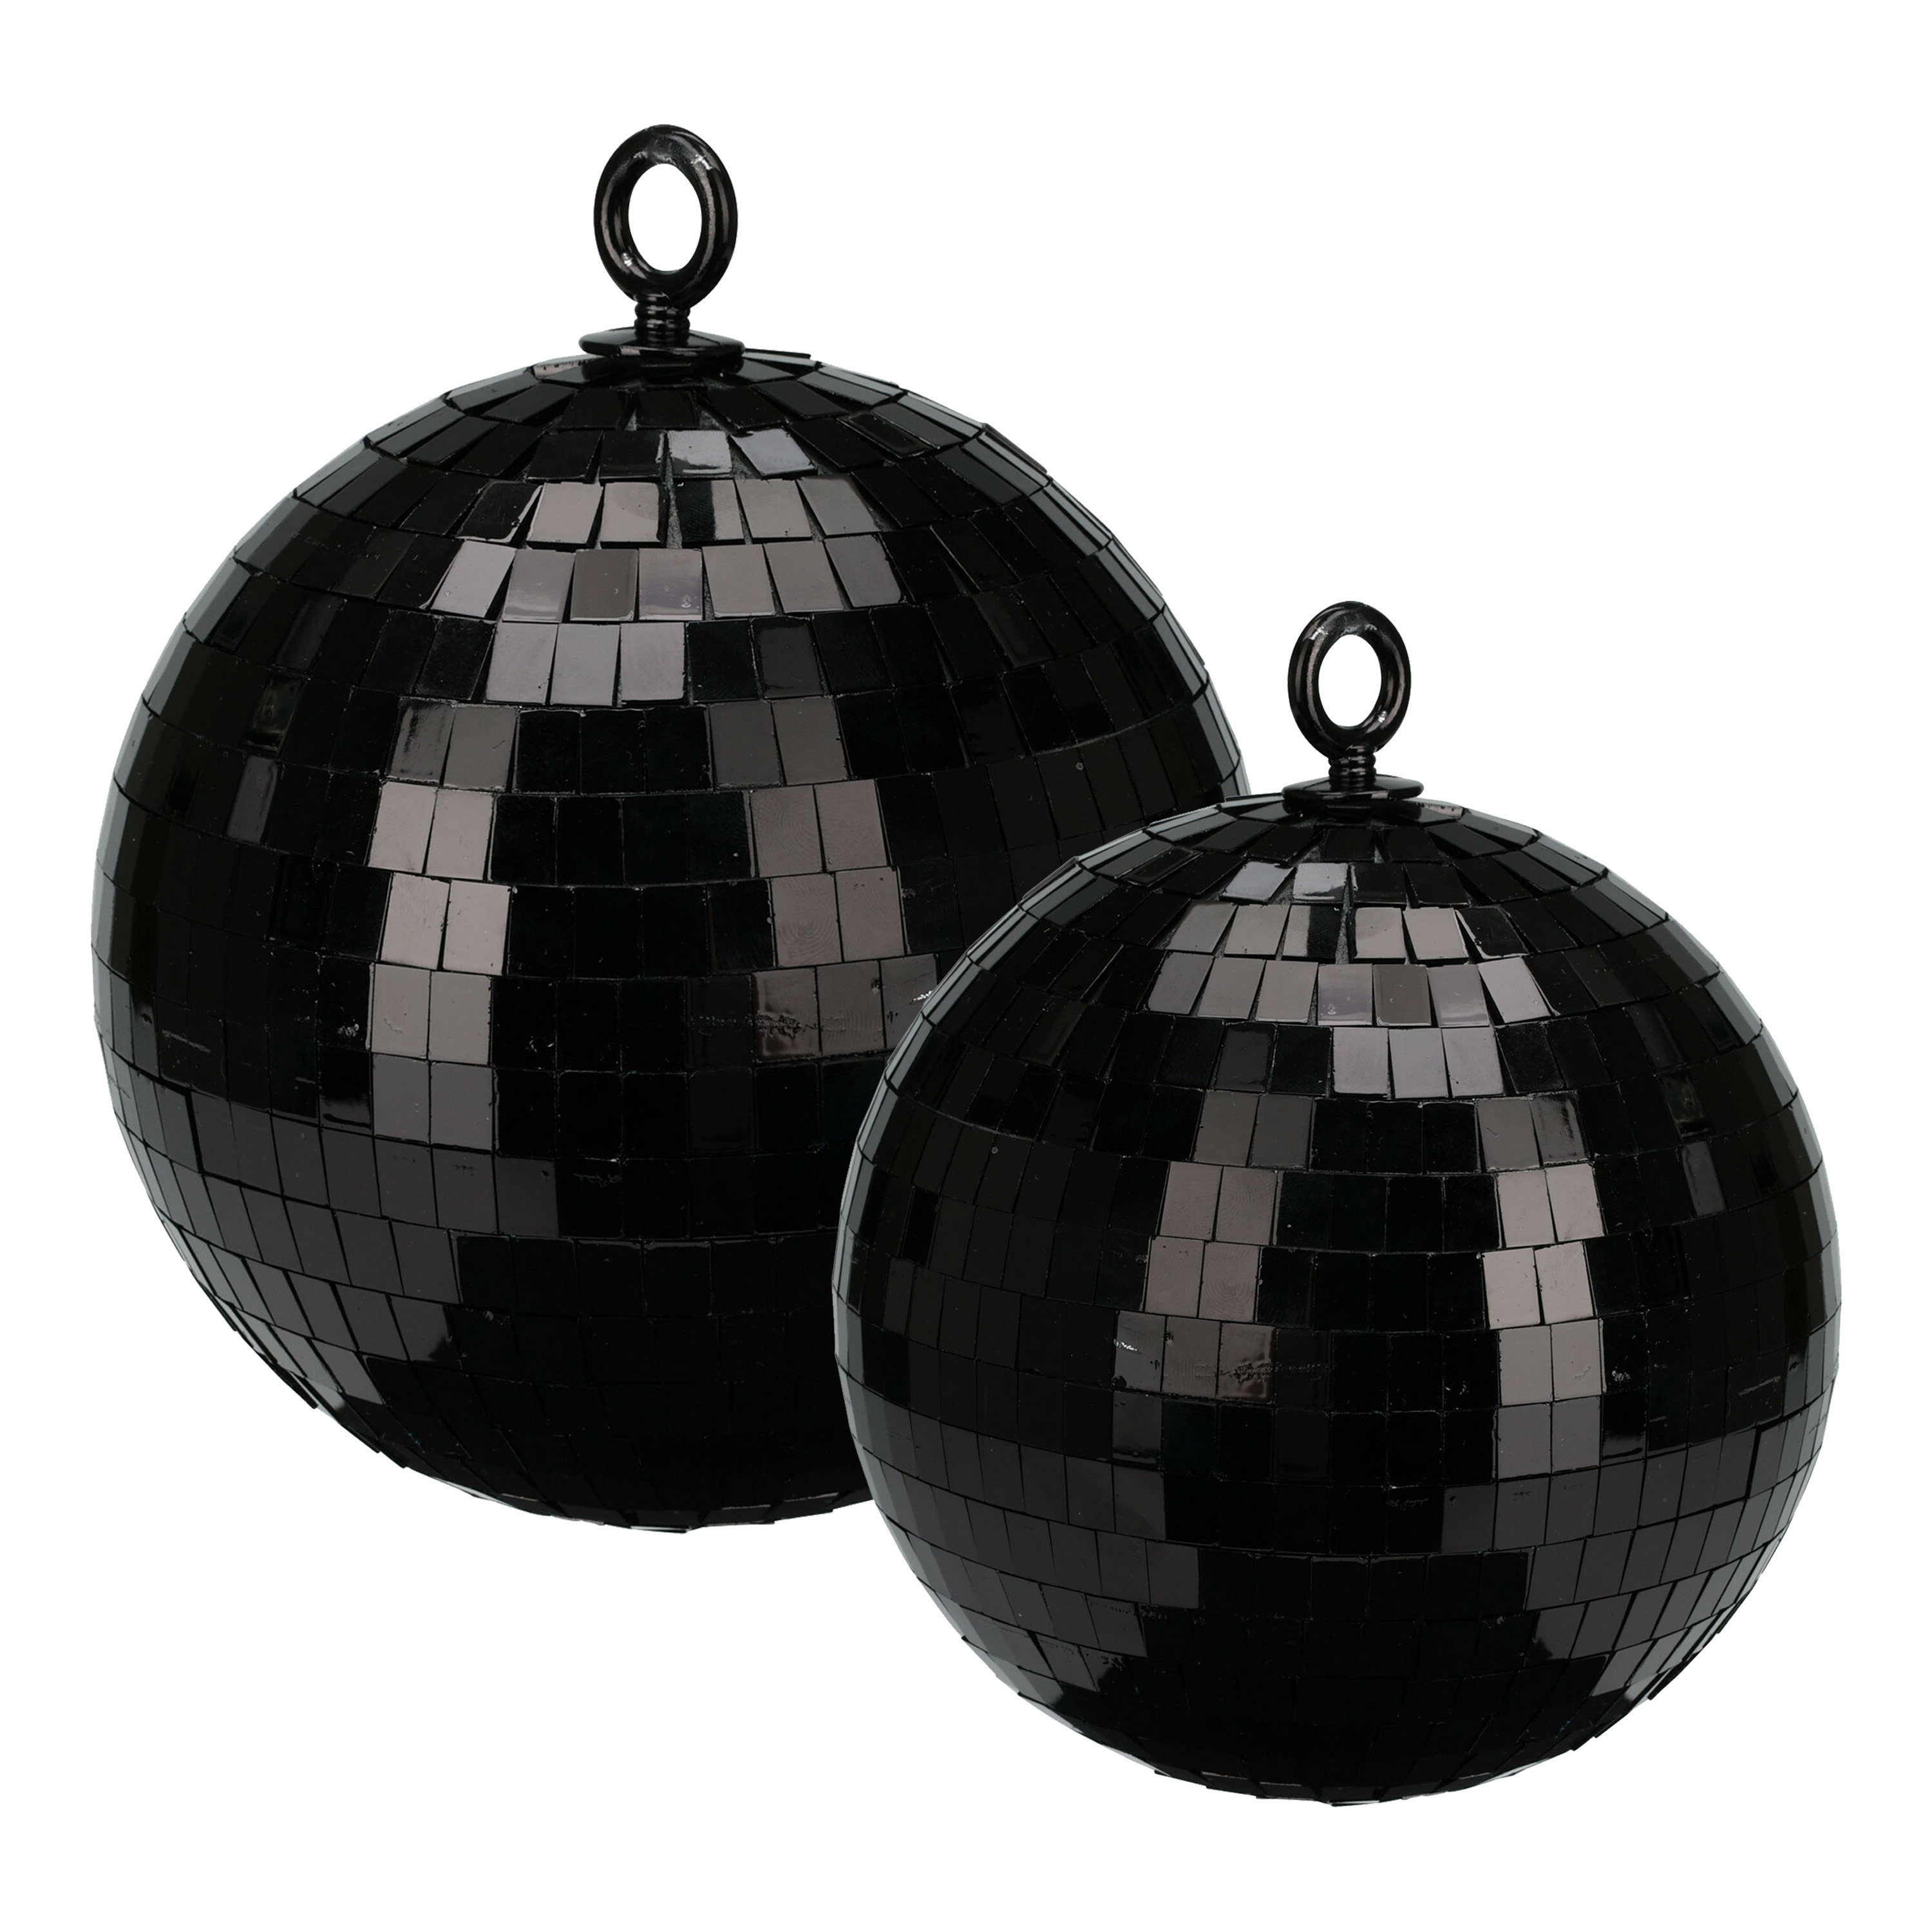 Grote discobal kerstballen 2x stuks zwart 15 en 18 cm kunststof